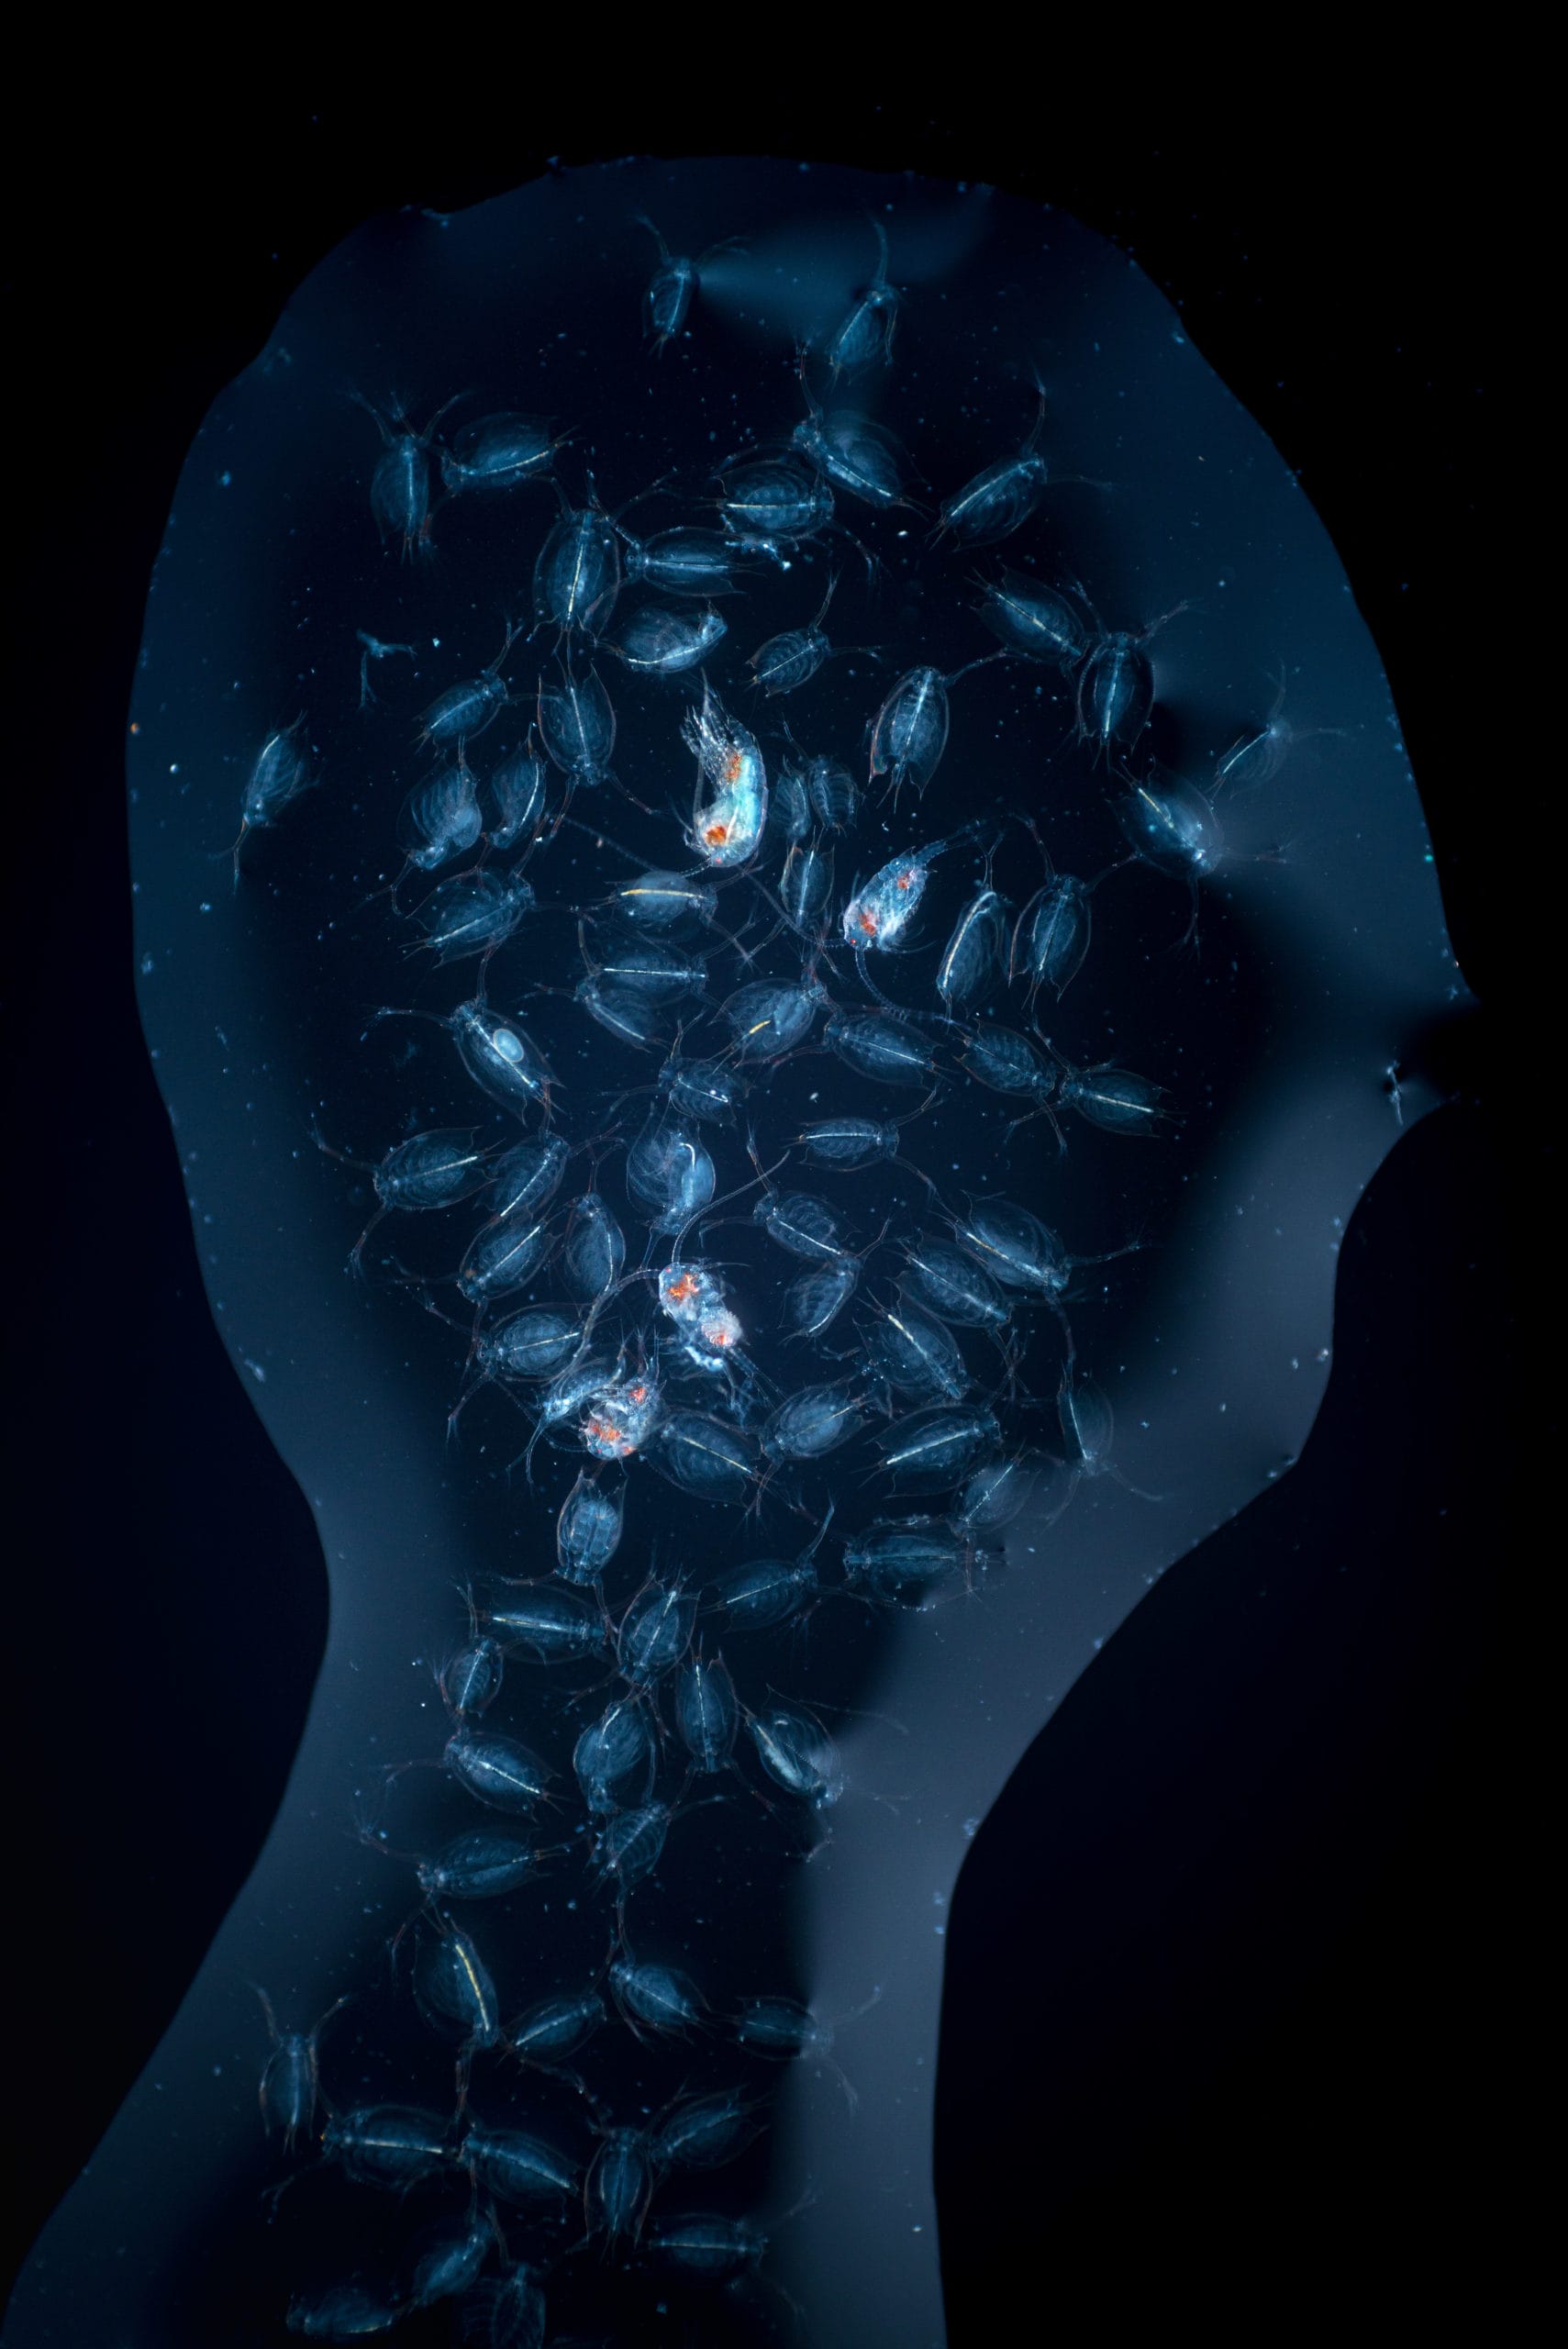 Multitude de petits planctons agglutinés